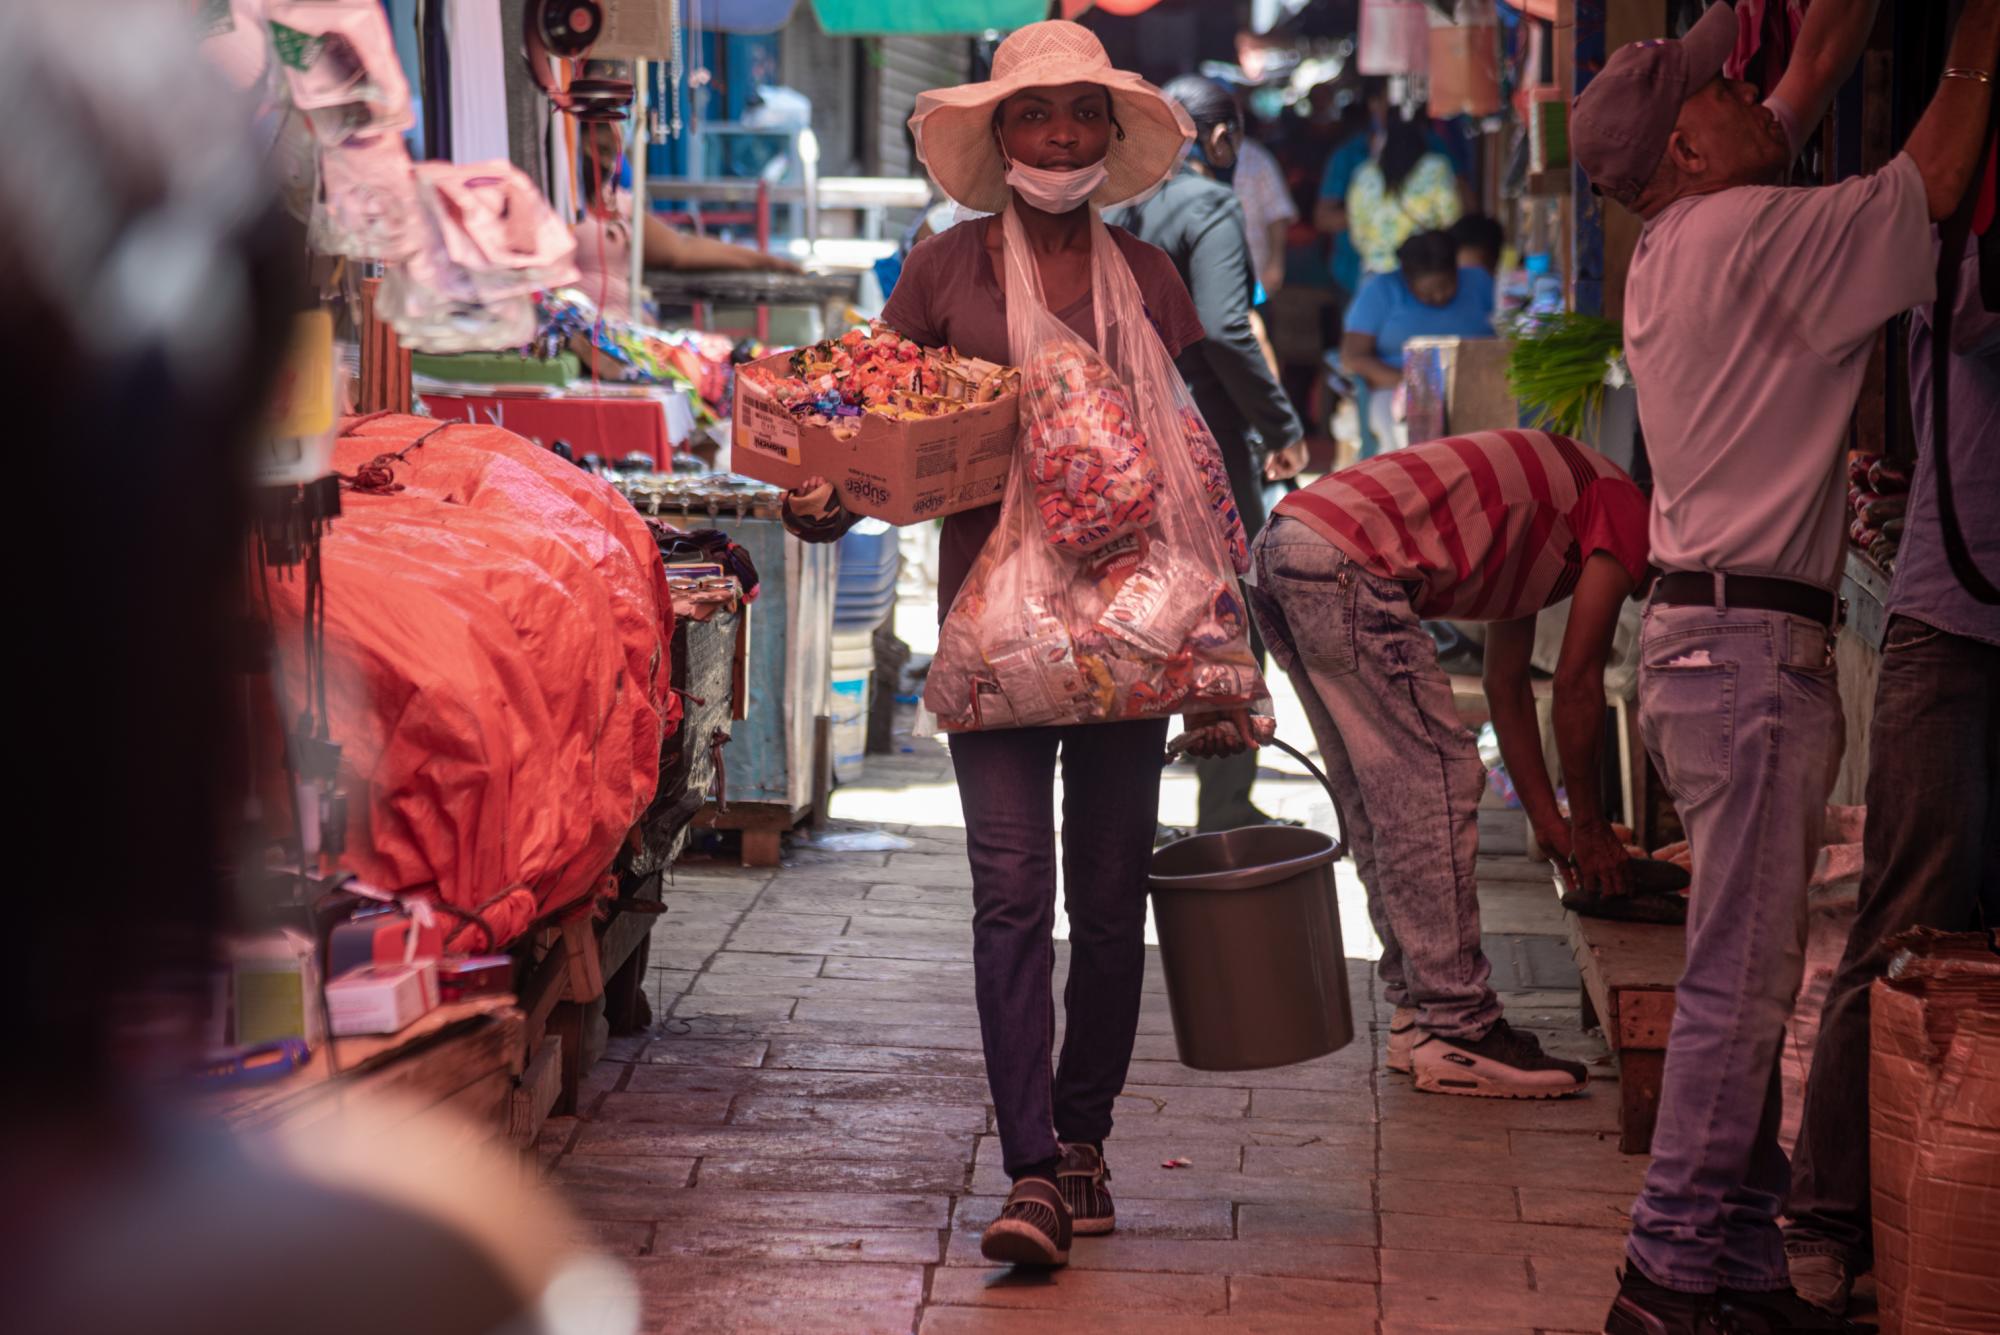 Calles y aceras abarrotadas con comerciantes informales forman parte de la cotidianidad para los habitantes de esa zona de la capital. (Foto: Eddy Vittini)